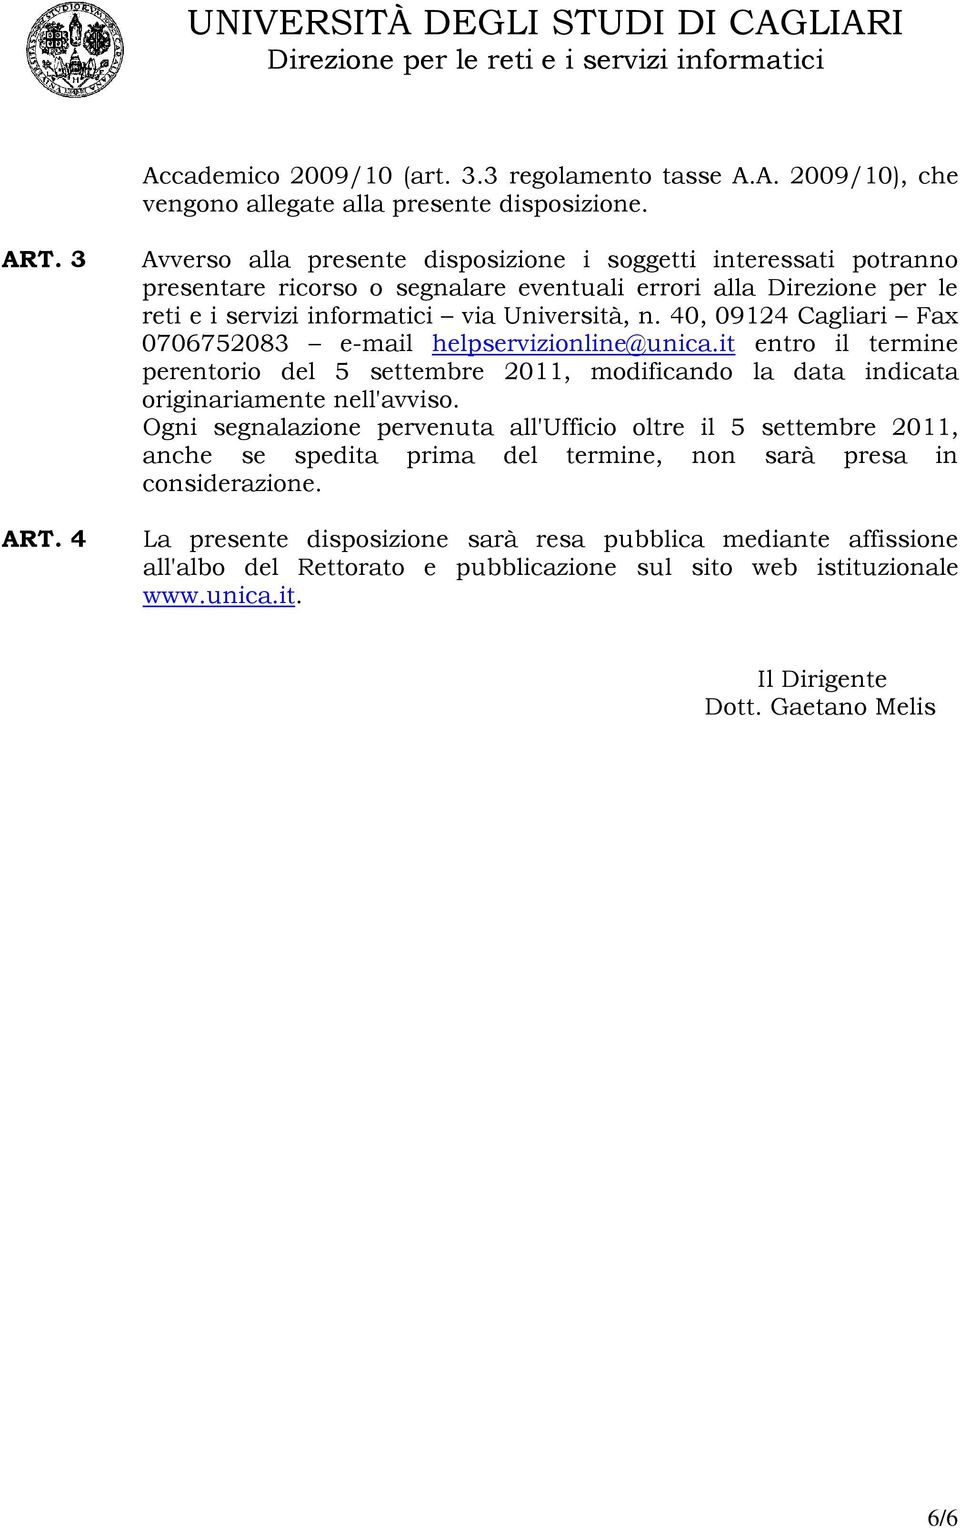 40, 09124 Cagliari Fax 0706752083 e-mail helpservizionline@unica.it entro il termine perentorio del 5 settembre 2011, modificando la data indicata originariamente nell'avviso.